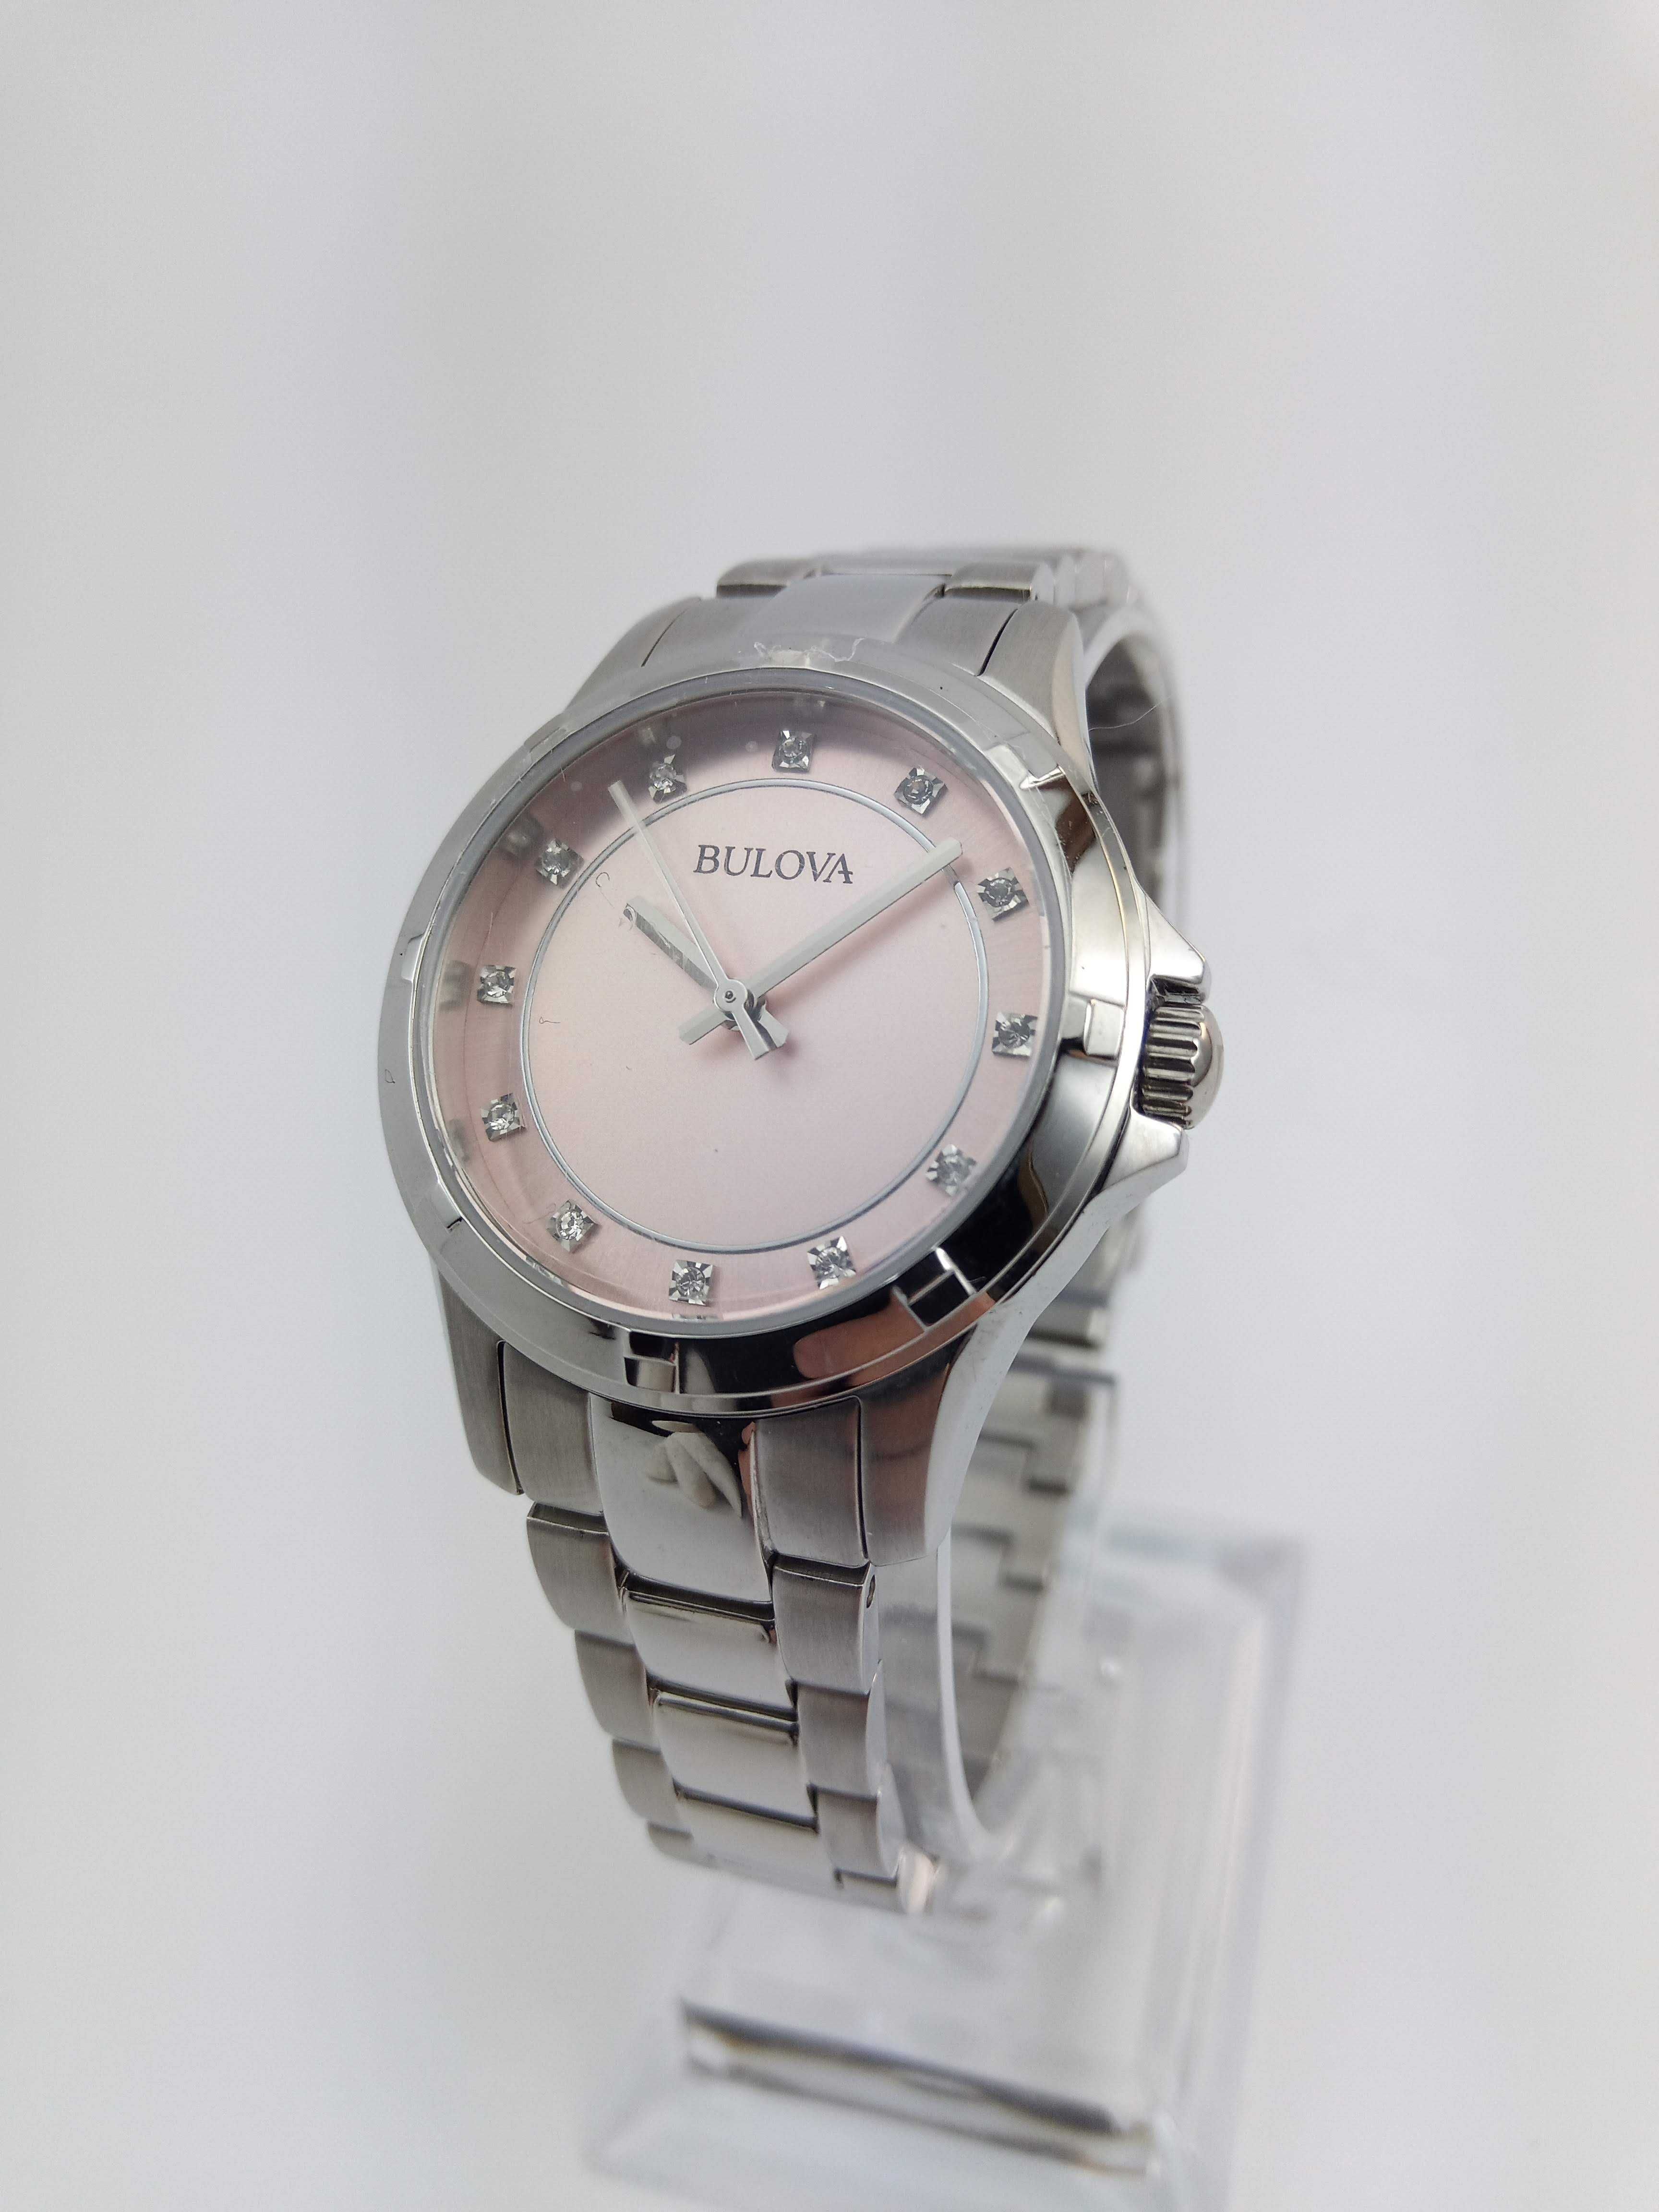 Японские женские часы с бриллиантами Bulova 96L232 в подарок девушке